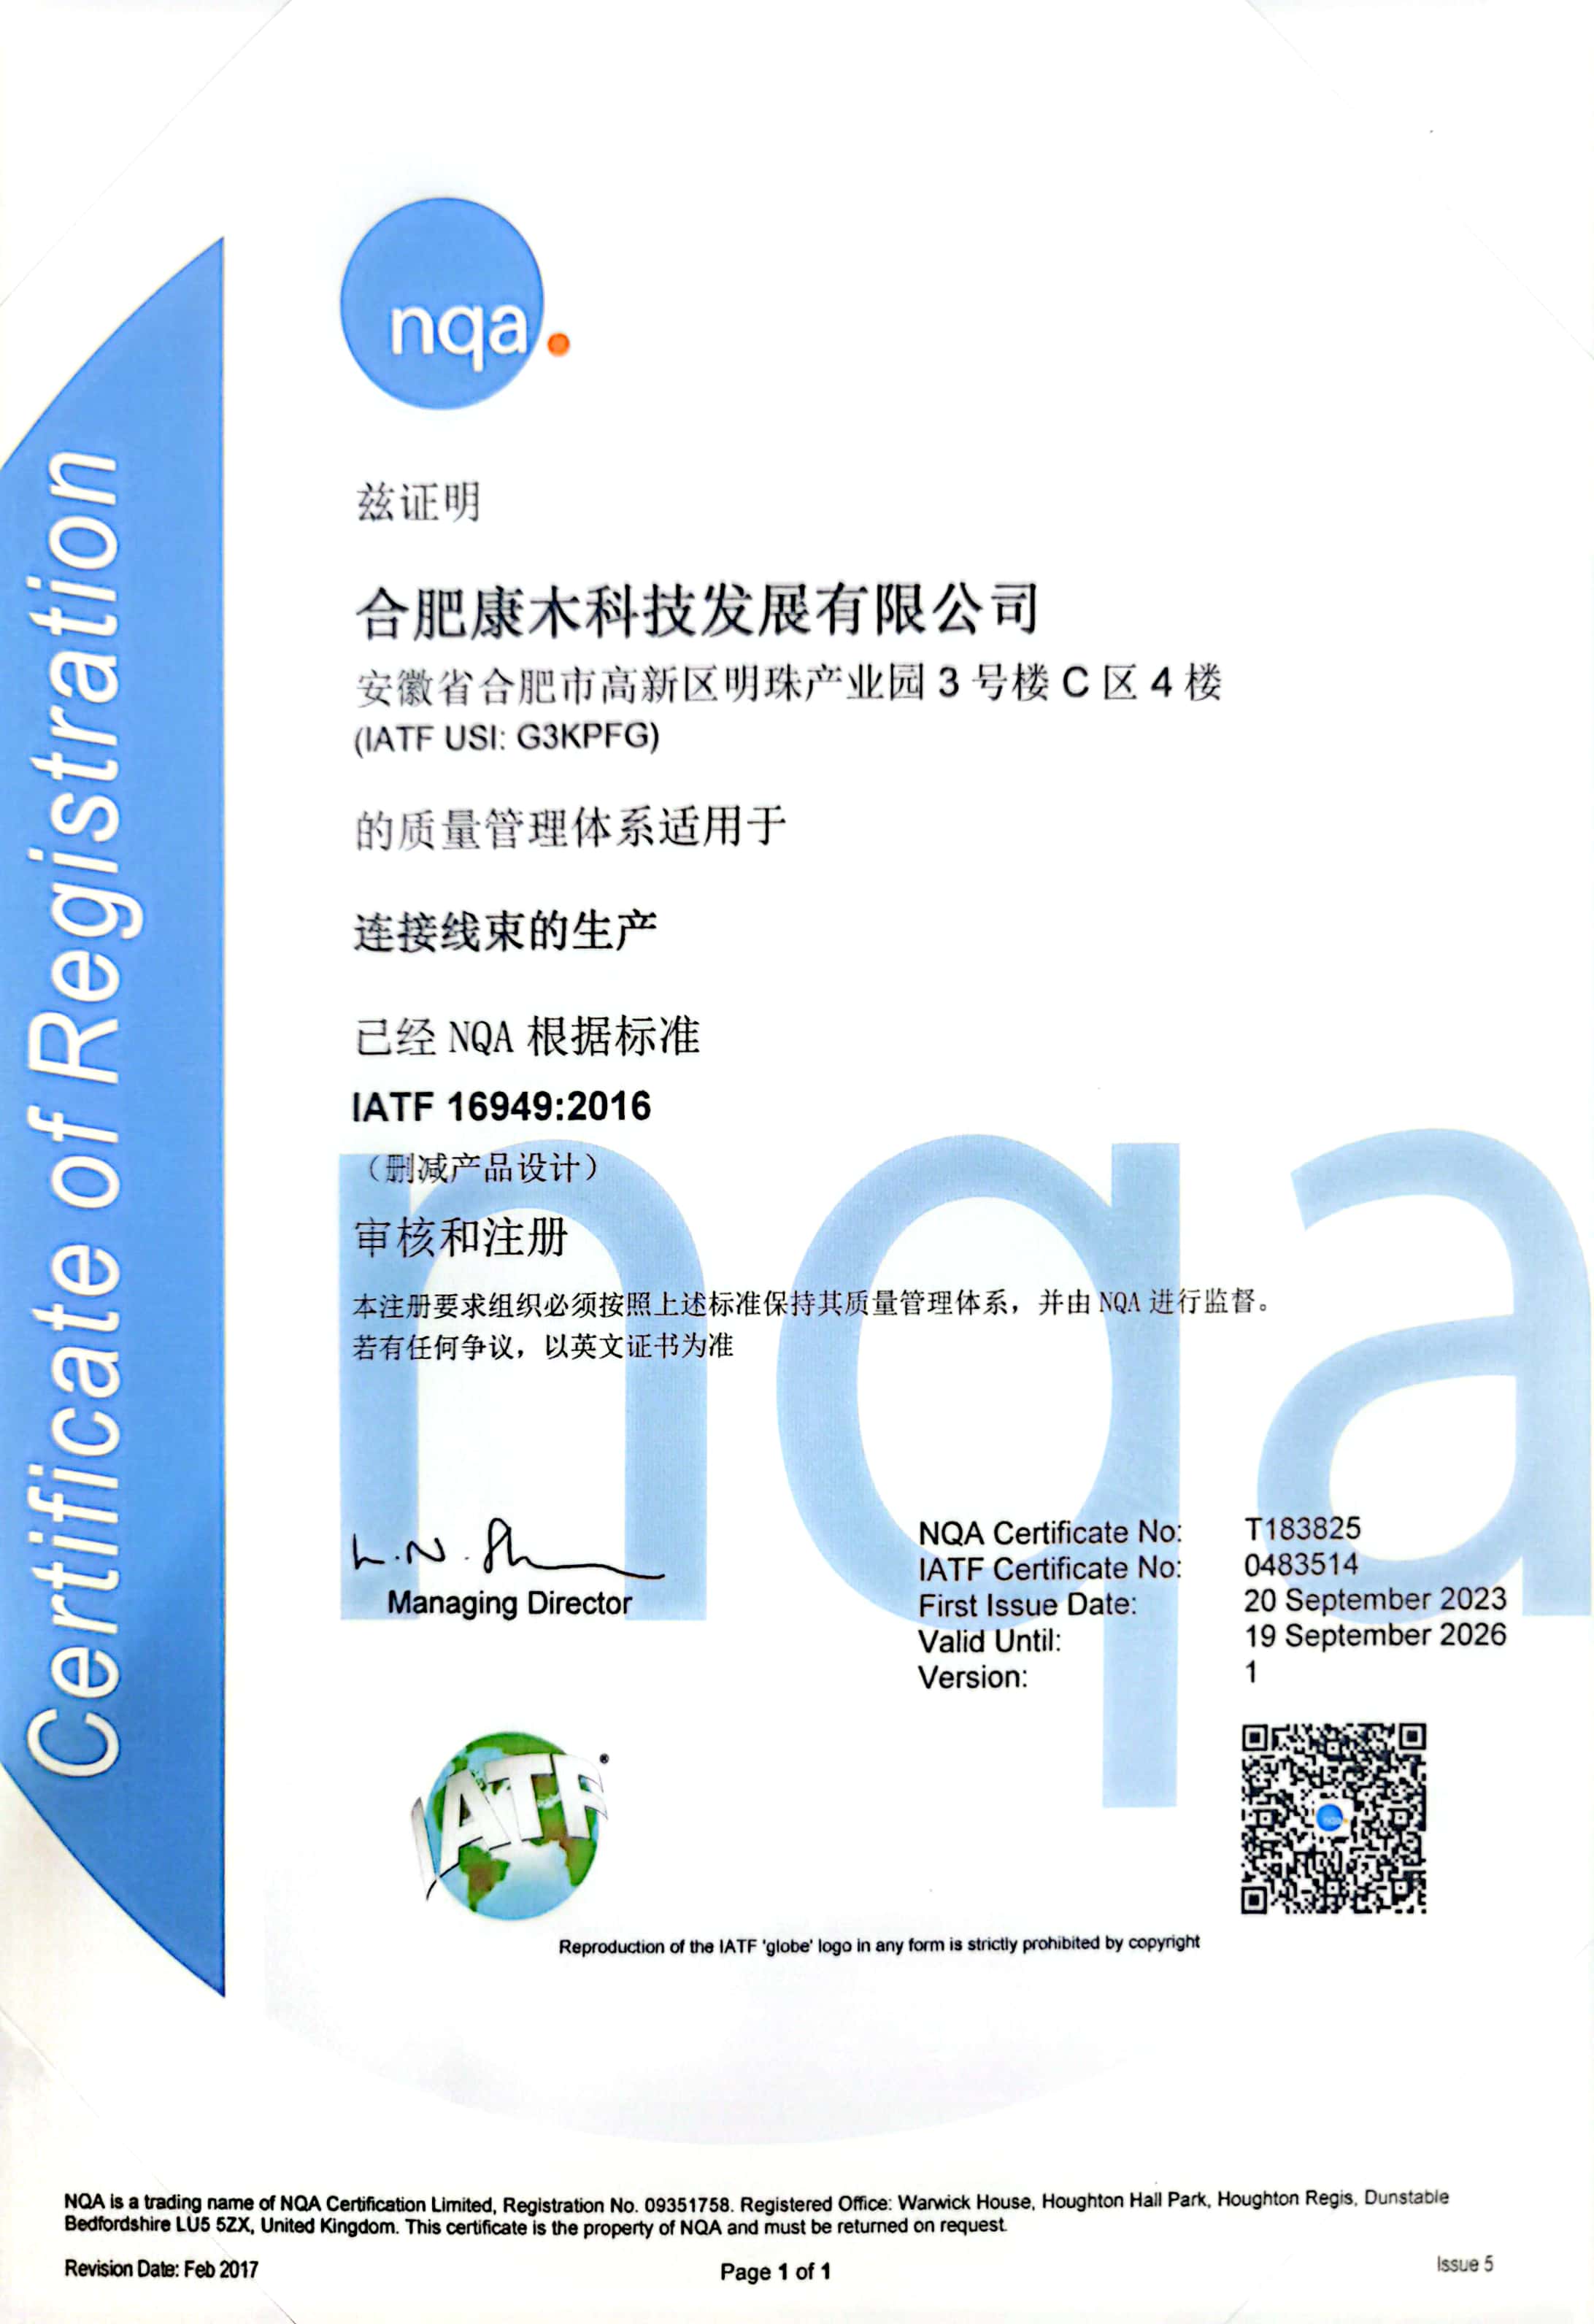 恭喜js6666金沙登录入口-官方入口科技IATF16949体系换证成功